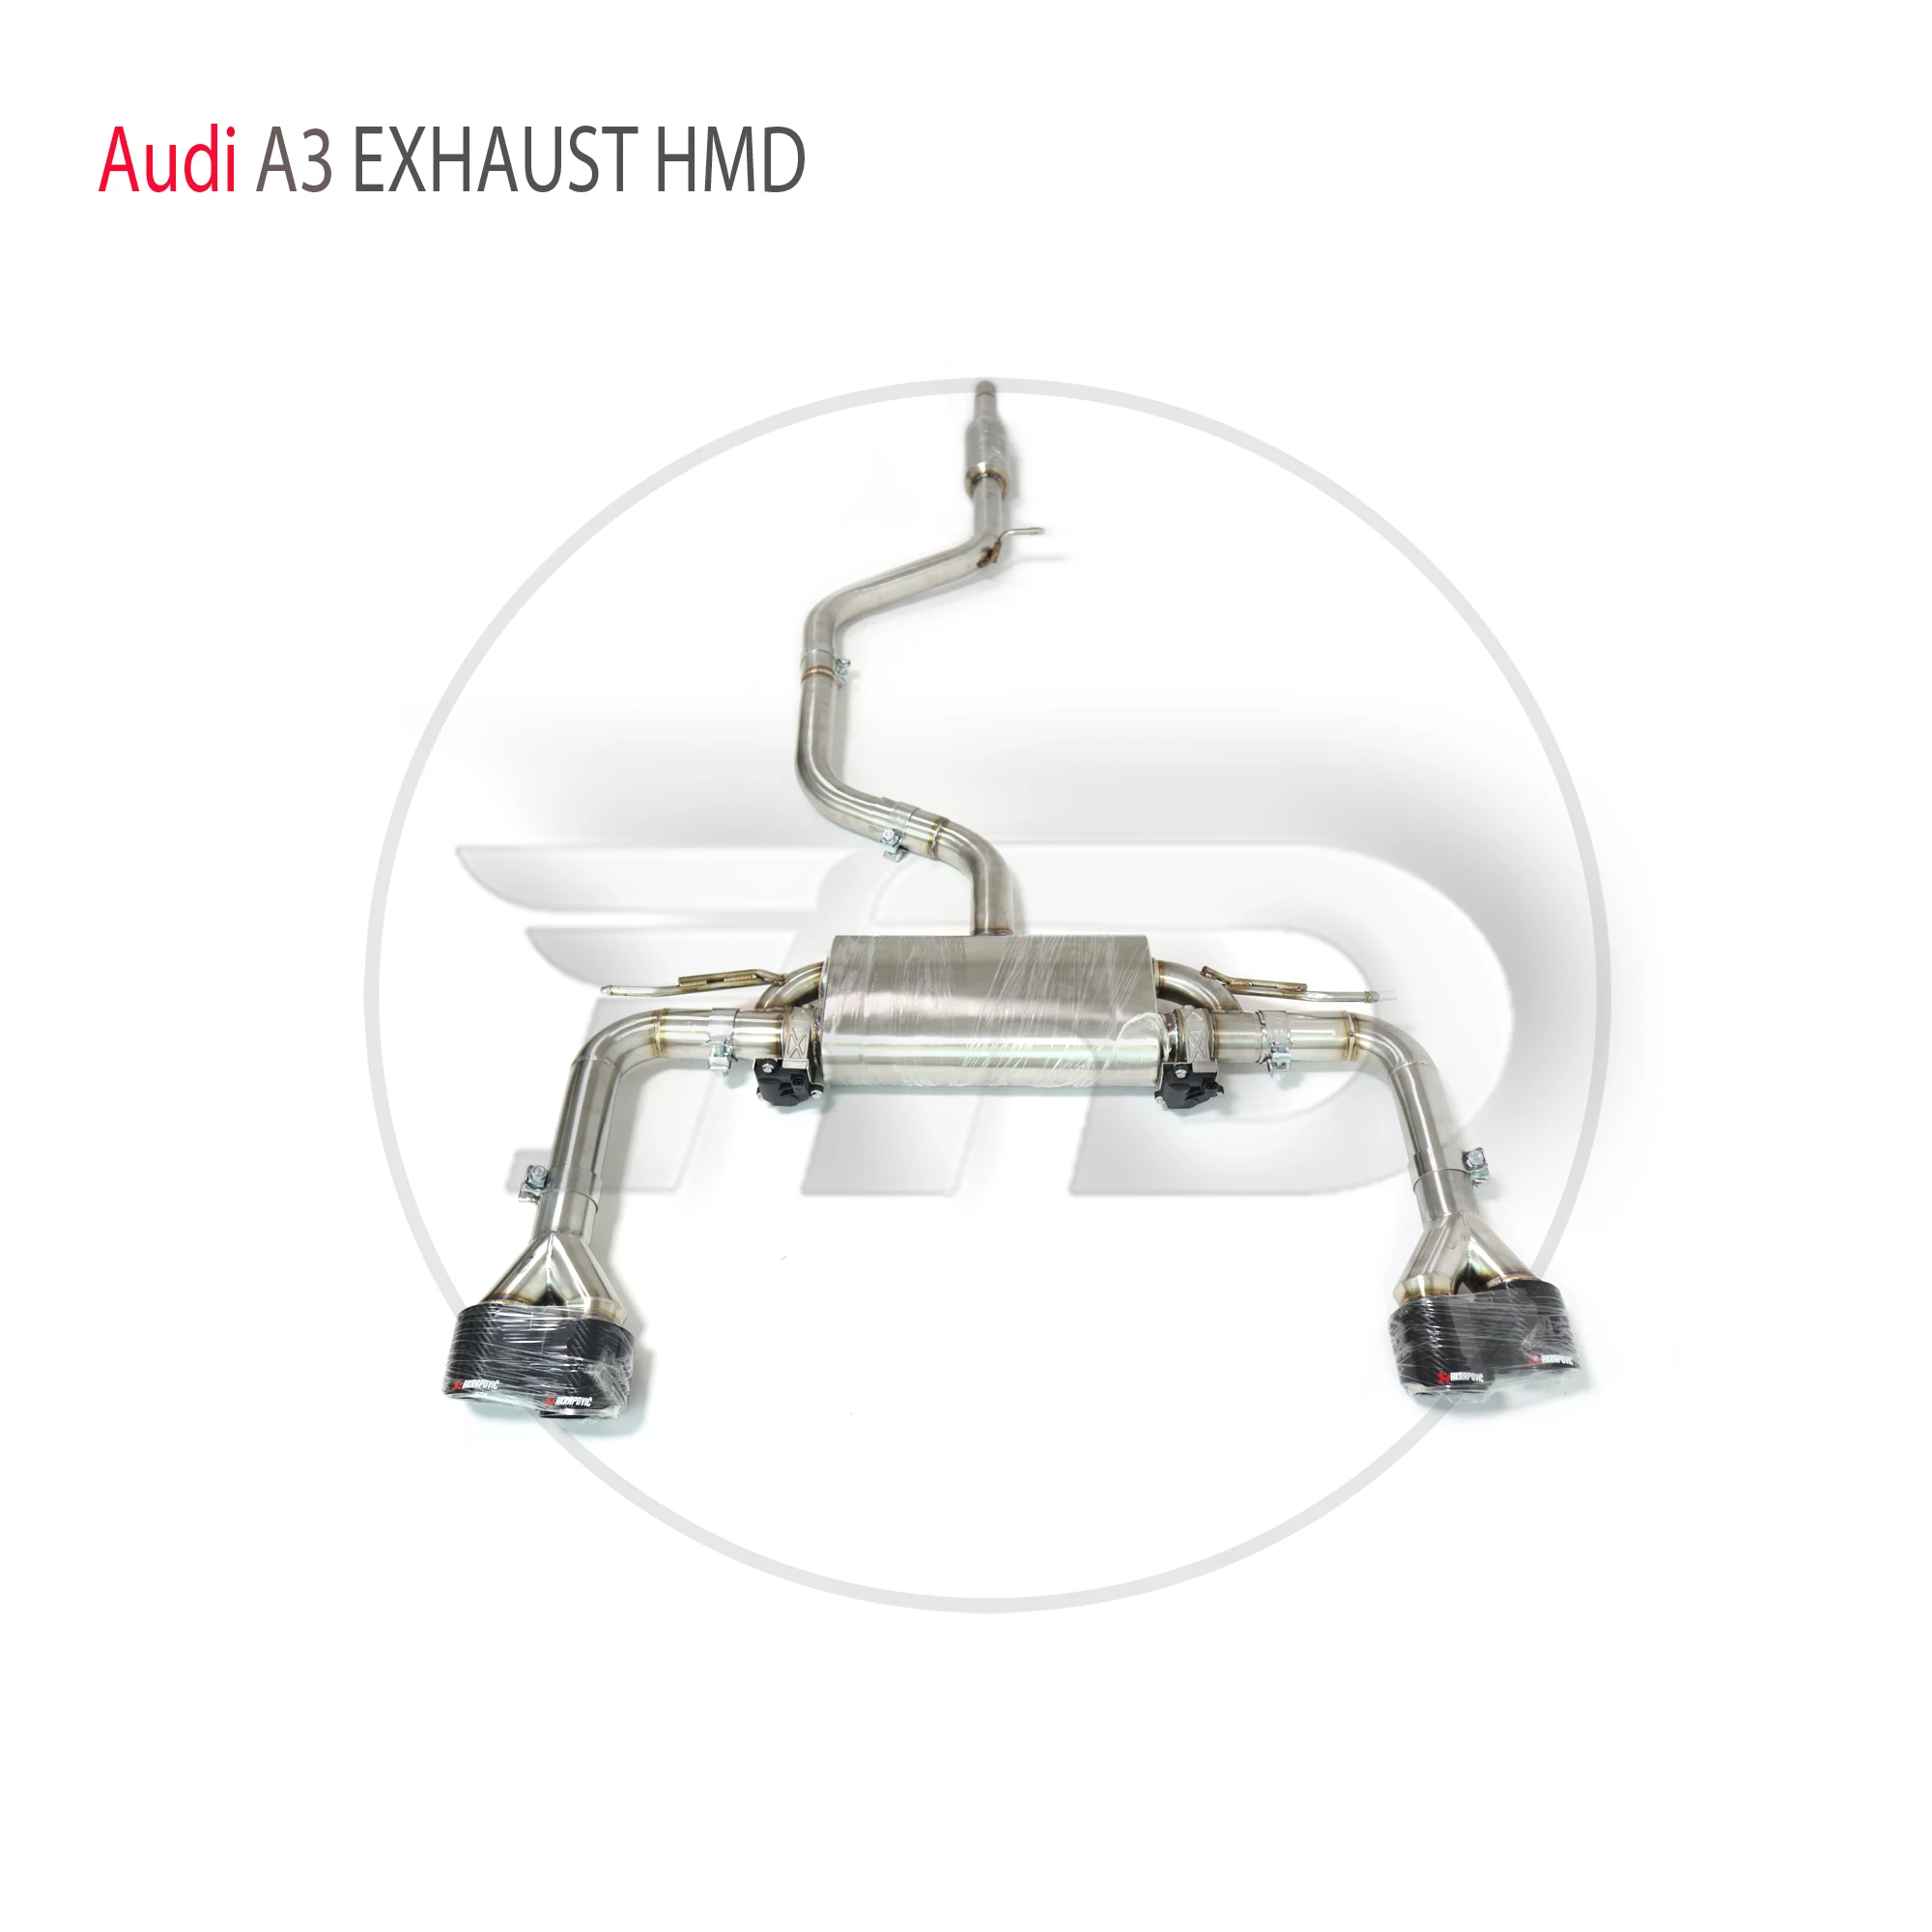 

Выхлопная система HMD из нержавеющей стали для Audi A3 1,4 T 1,8 T 2,0 T, автоматическая модификация, электронная стандартная